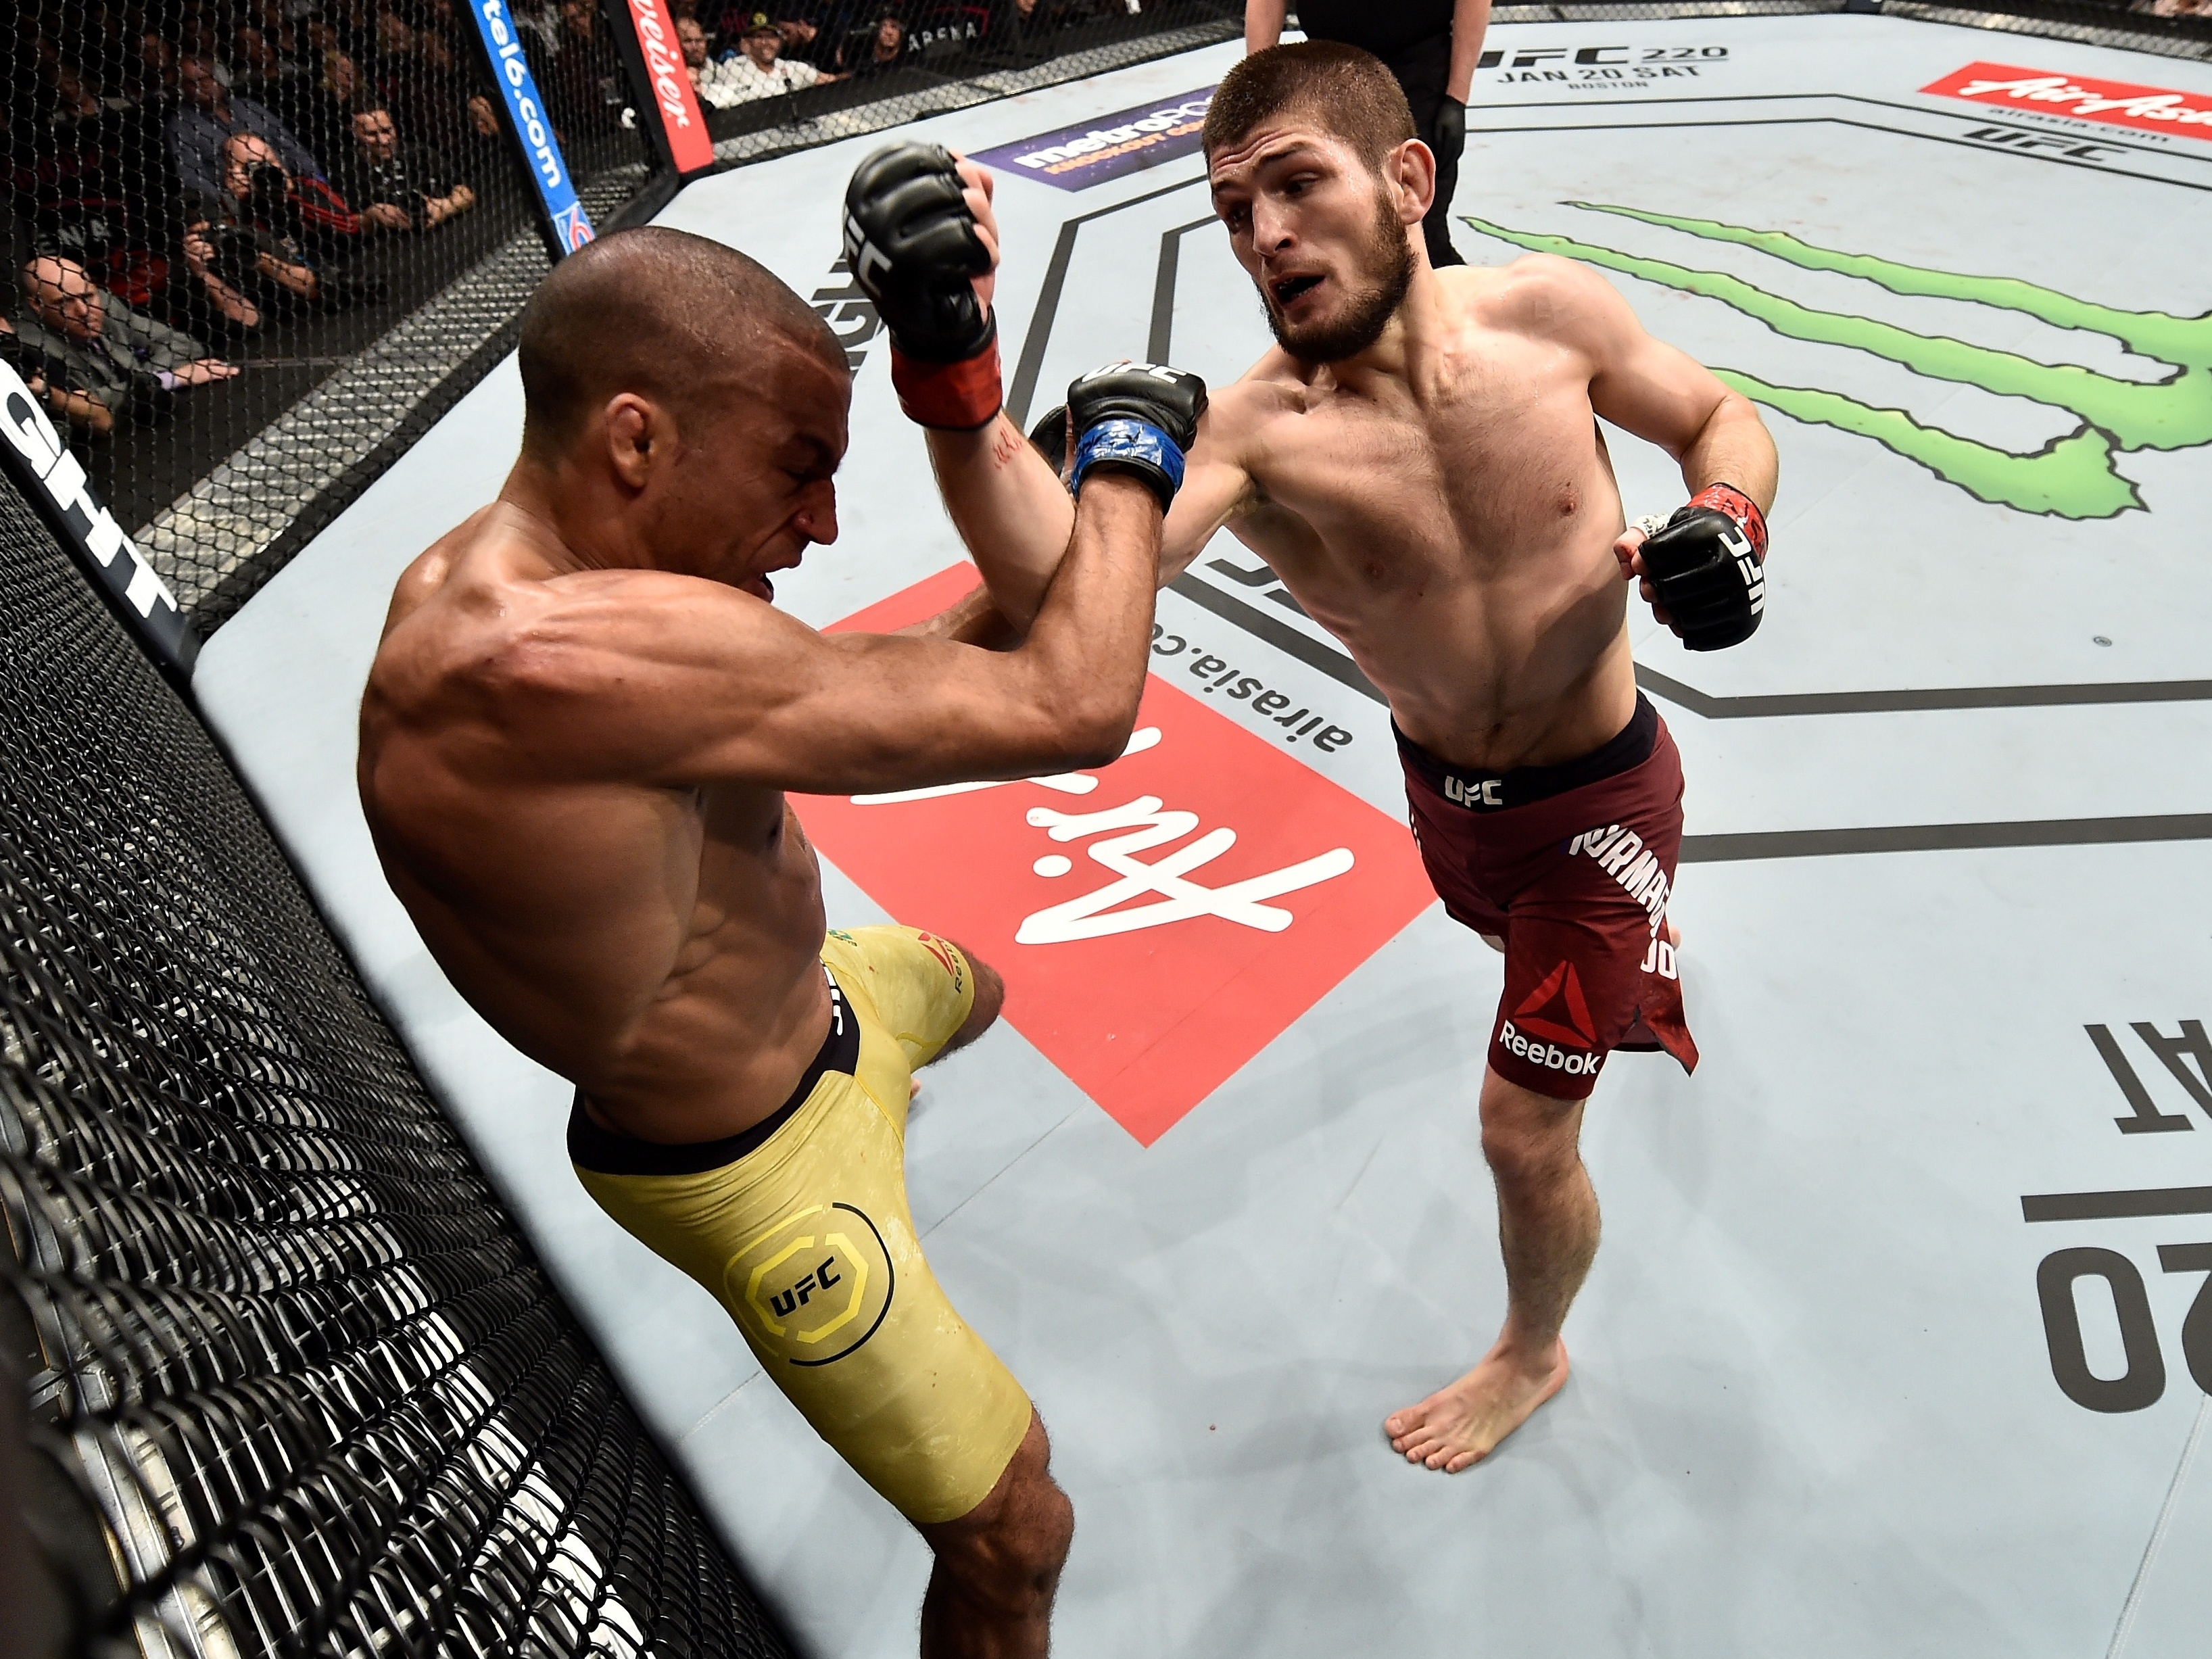 UFC: Nurmagomedov pode perder o título ganho a McGregor. Russo